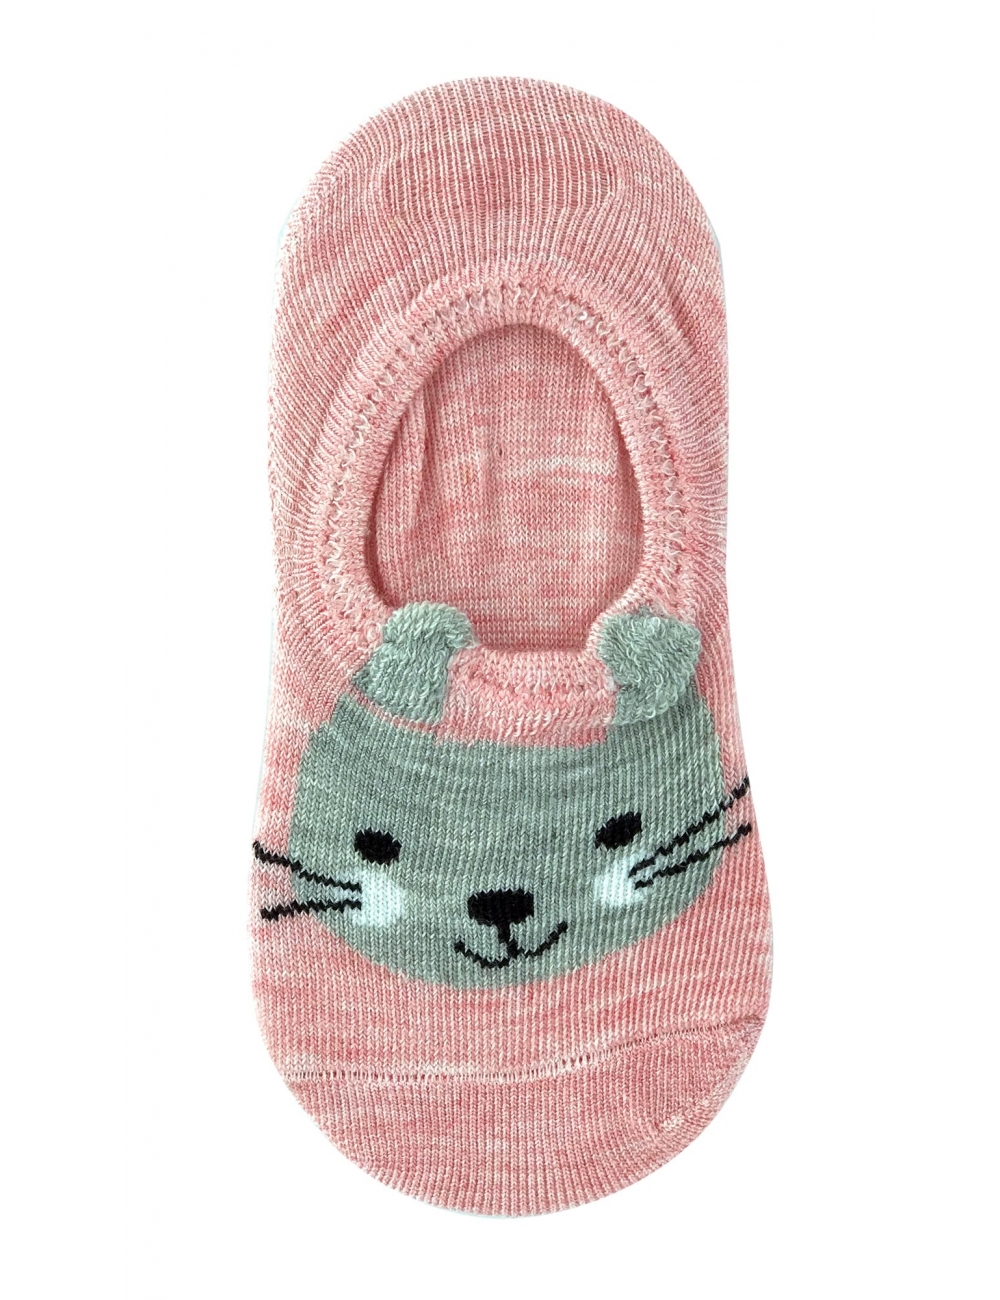 Сліди (шкарпетки) для дівчаток Midini Зайчики рожеві